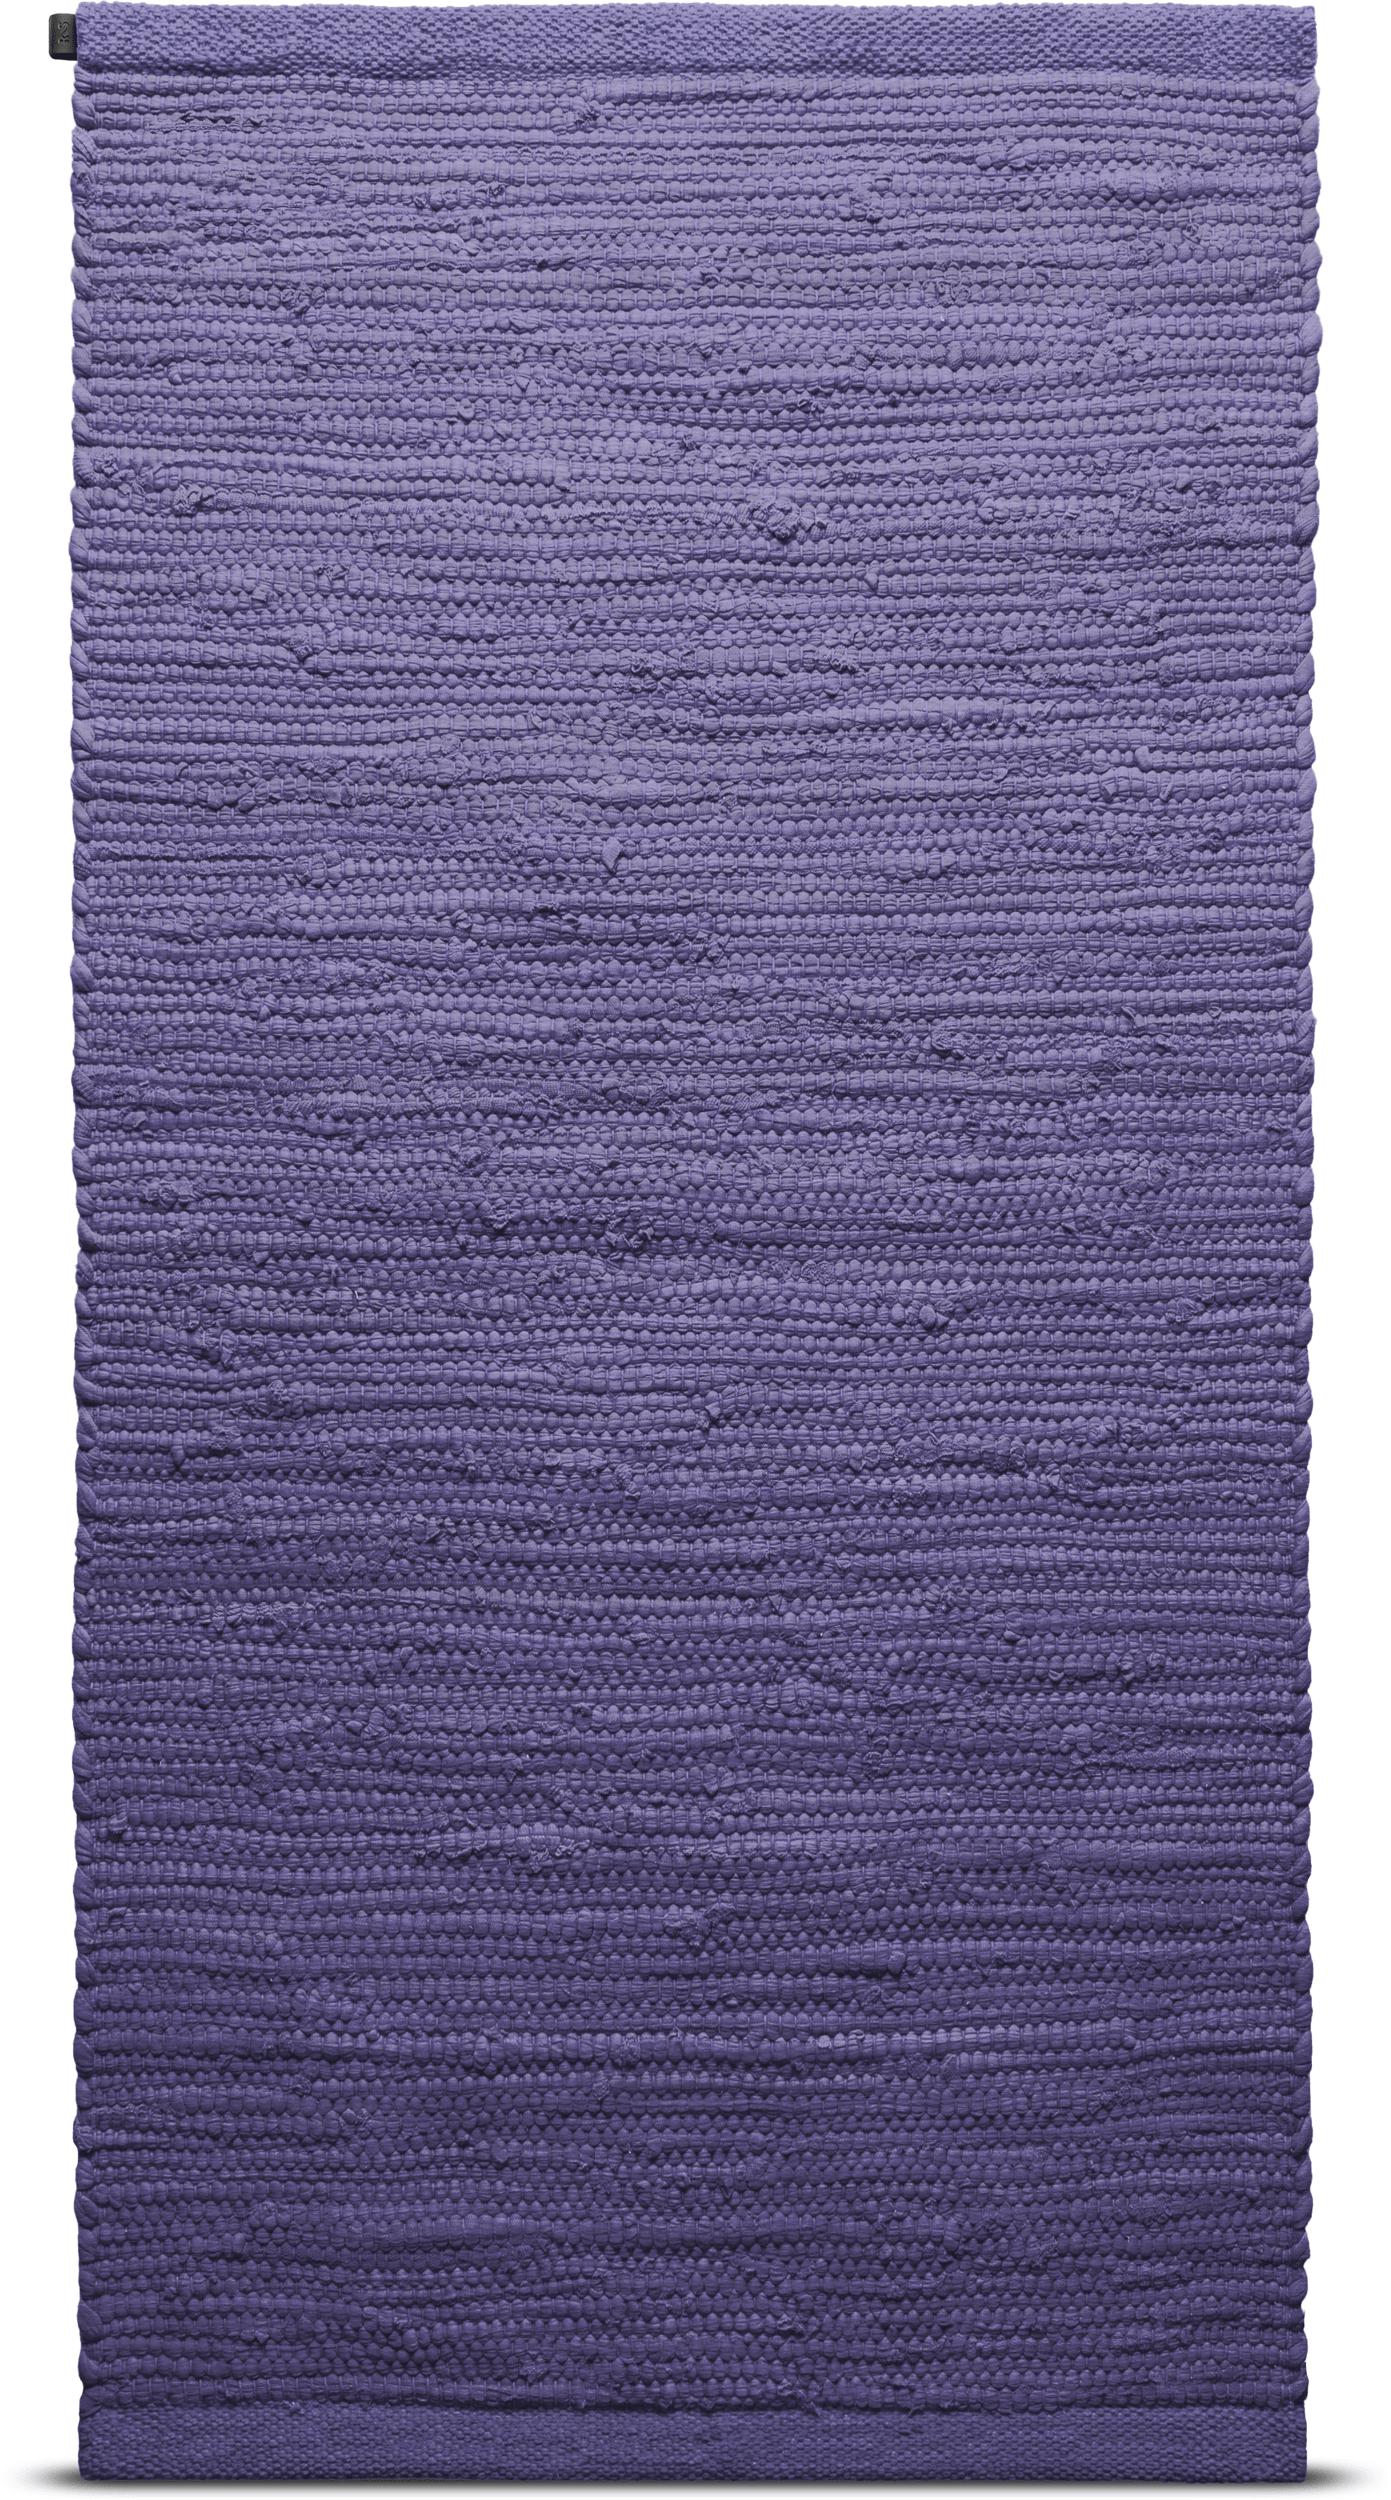 Tappeto in cotone solido 65 x 135 cm, elettrico